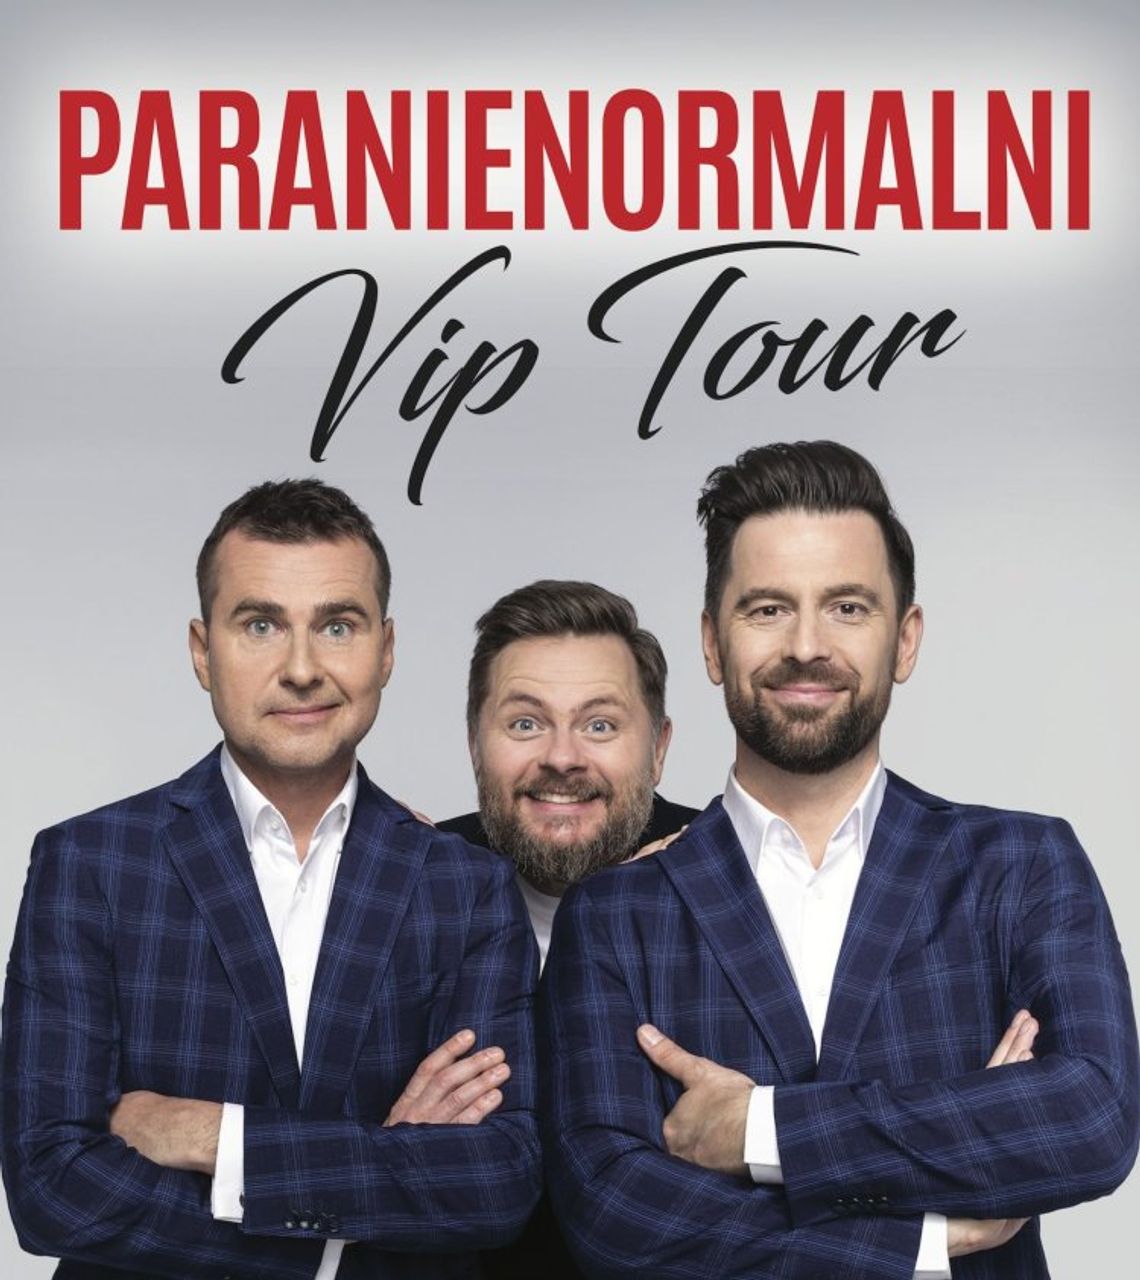 Dwa występy „Paranienormalni” w ramach „VIP Tour”